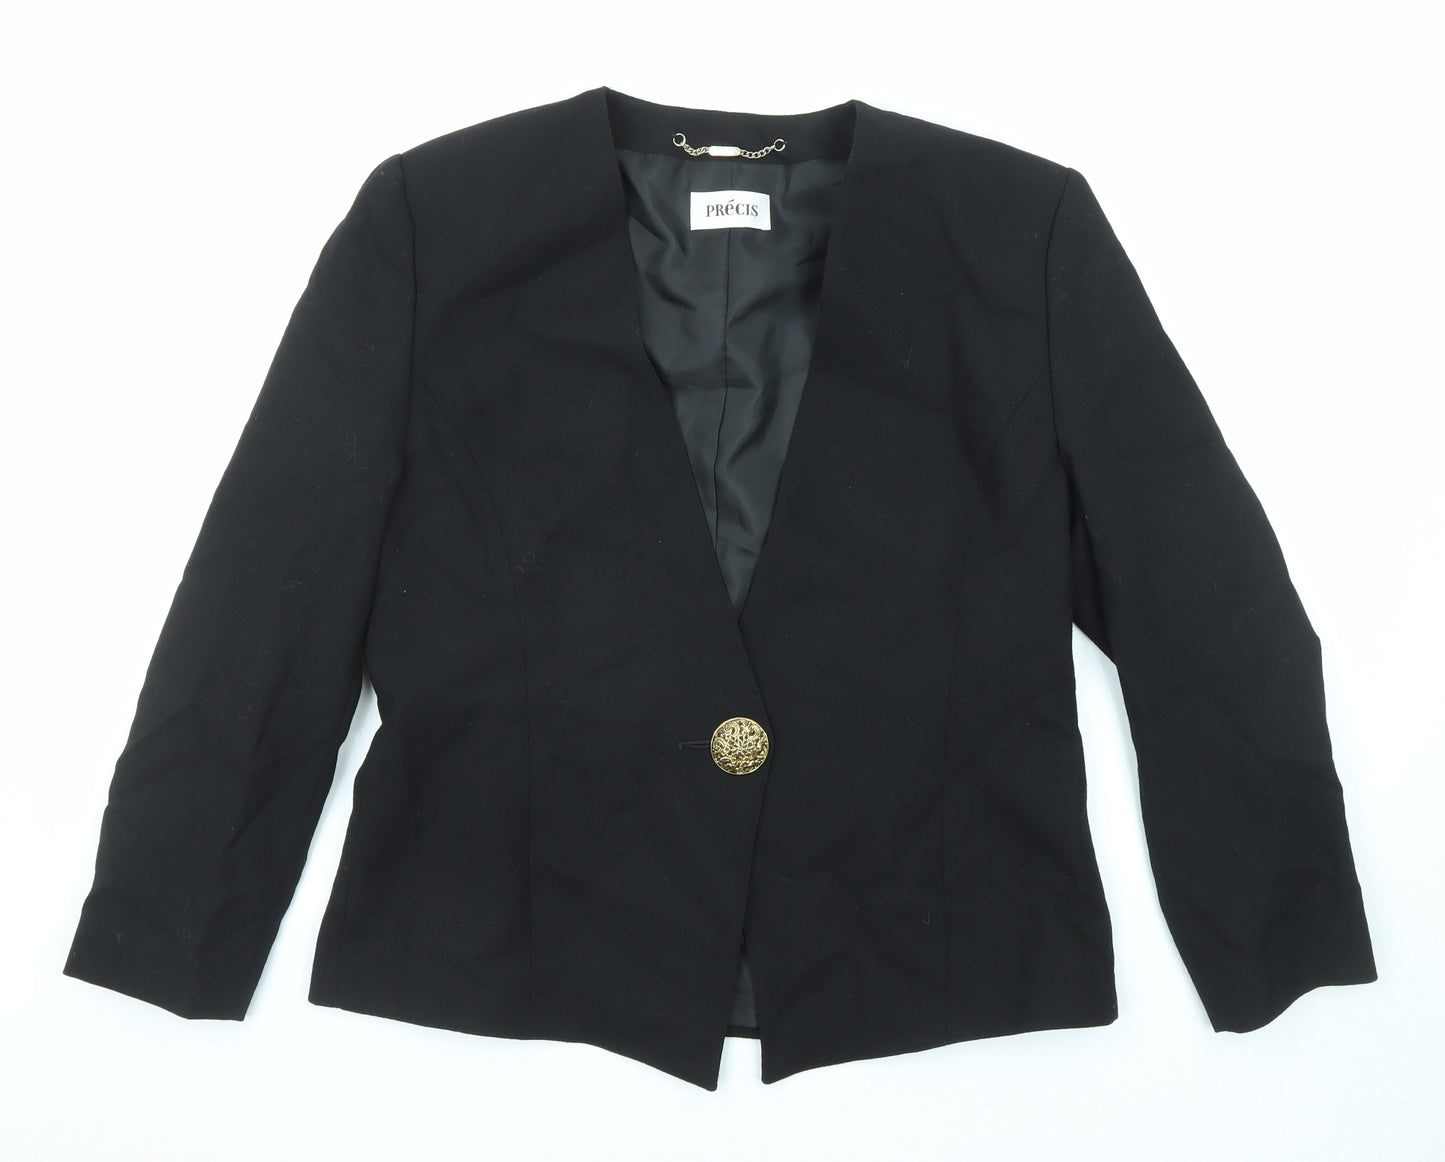 Precis Womens Black Jacket Blazer Size 16 Button